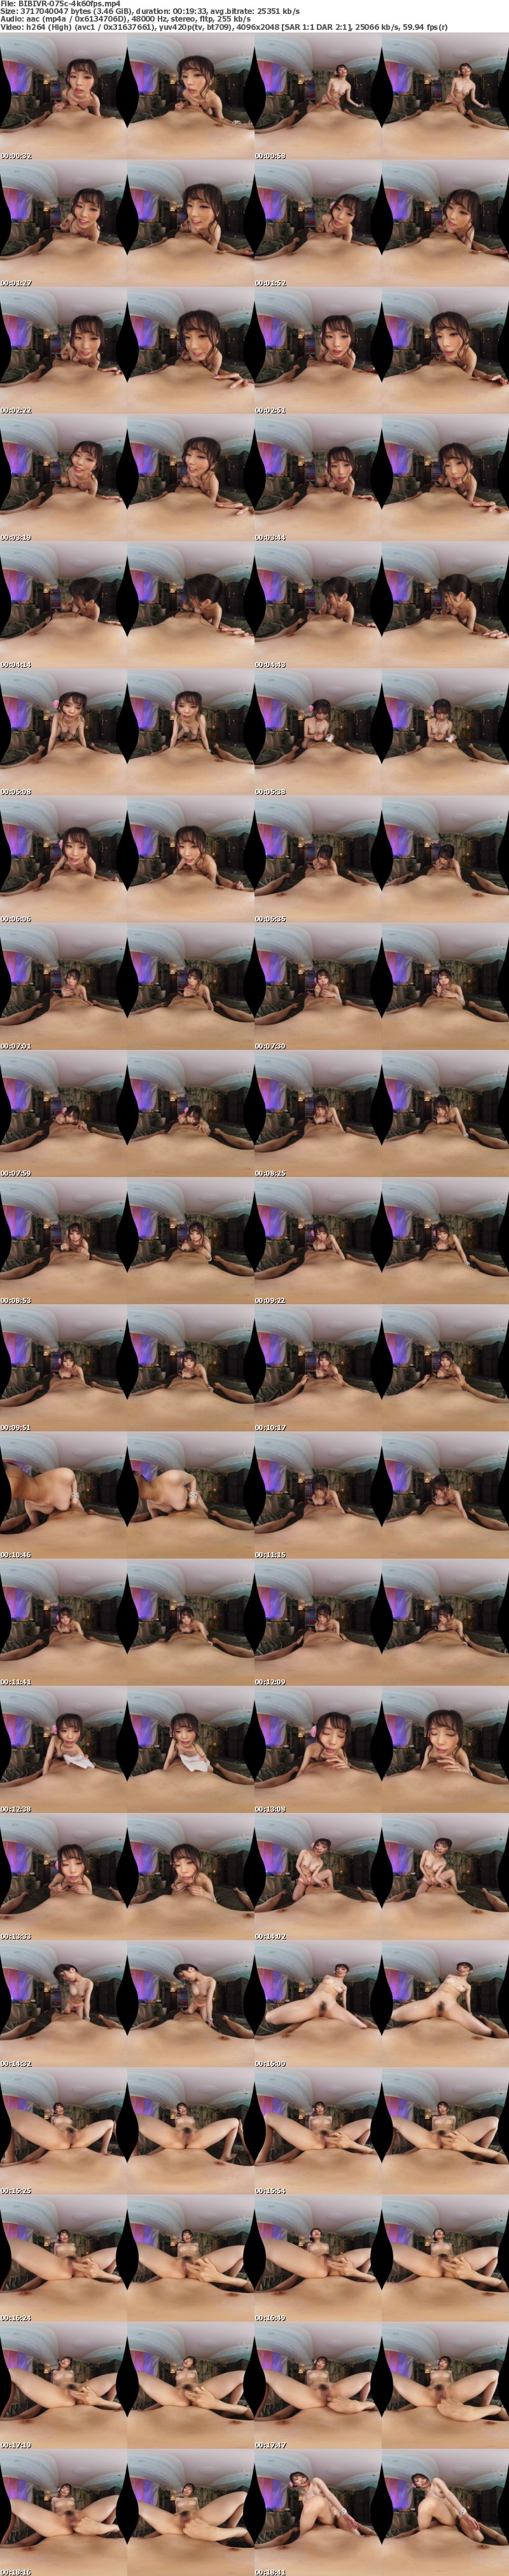 (VR) BIBIVR-075 【VR】特製ホットオイルとトロトロ淫語で身体の芯からデトックスする南国風メンズエステ 新井リマ